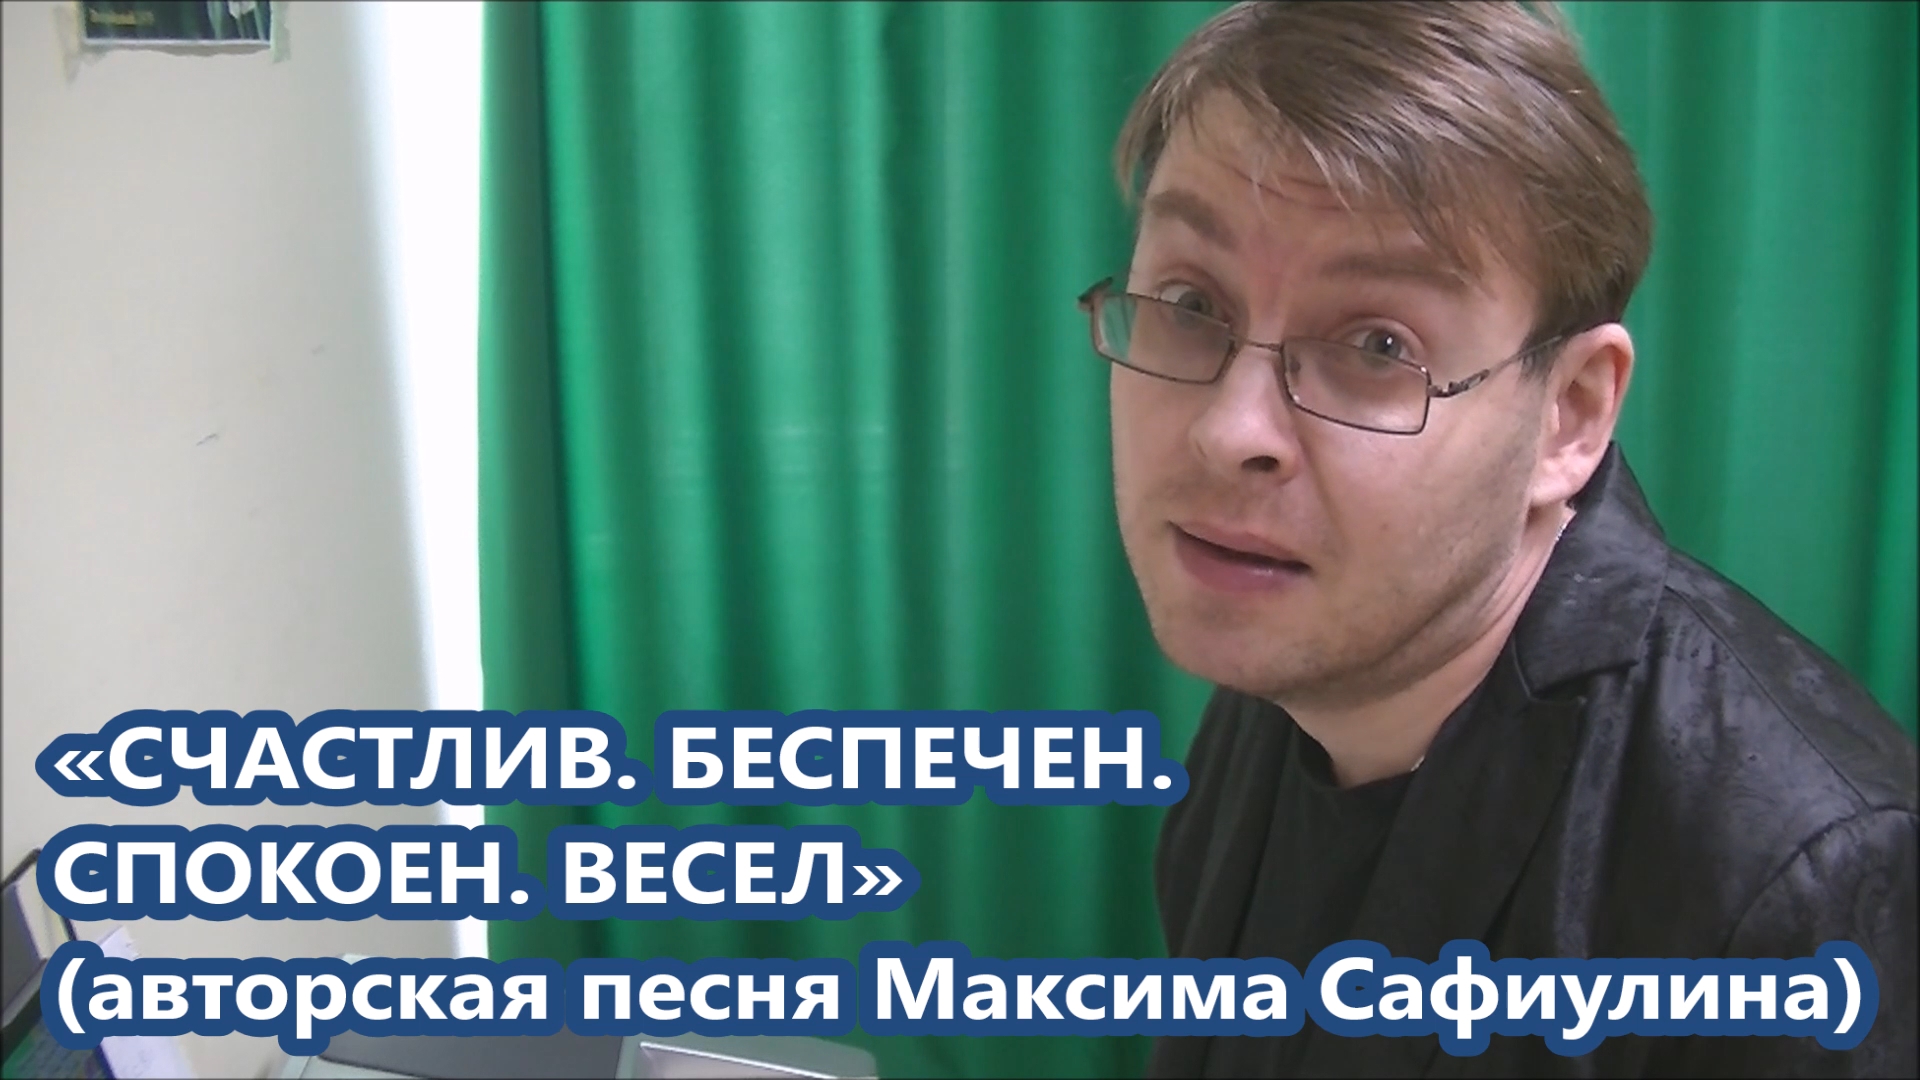 Максим Сафиулин - "СЧАСТЛИВ. БЕСПЕЧЕН. СПОКОЕН. ВЕСЕЛ" (авторская песня)